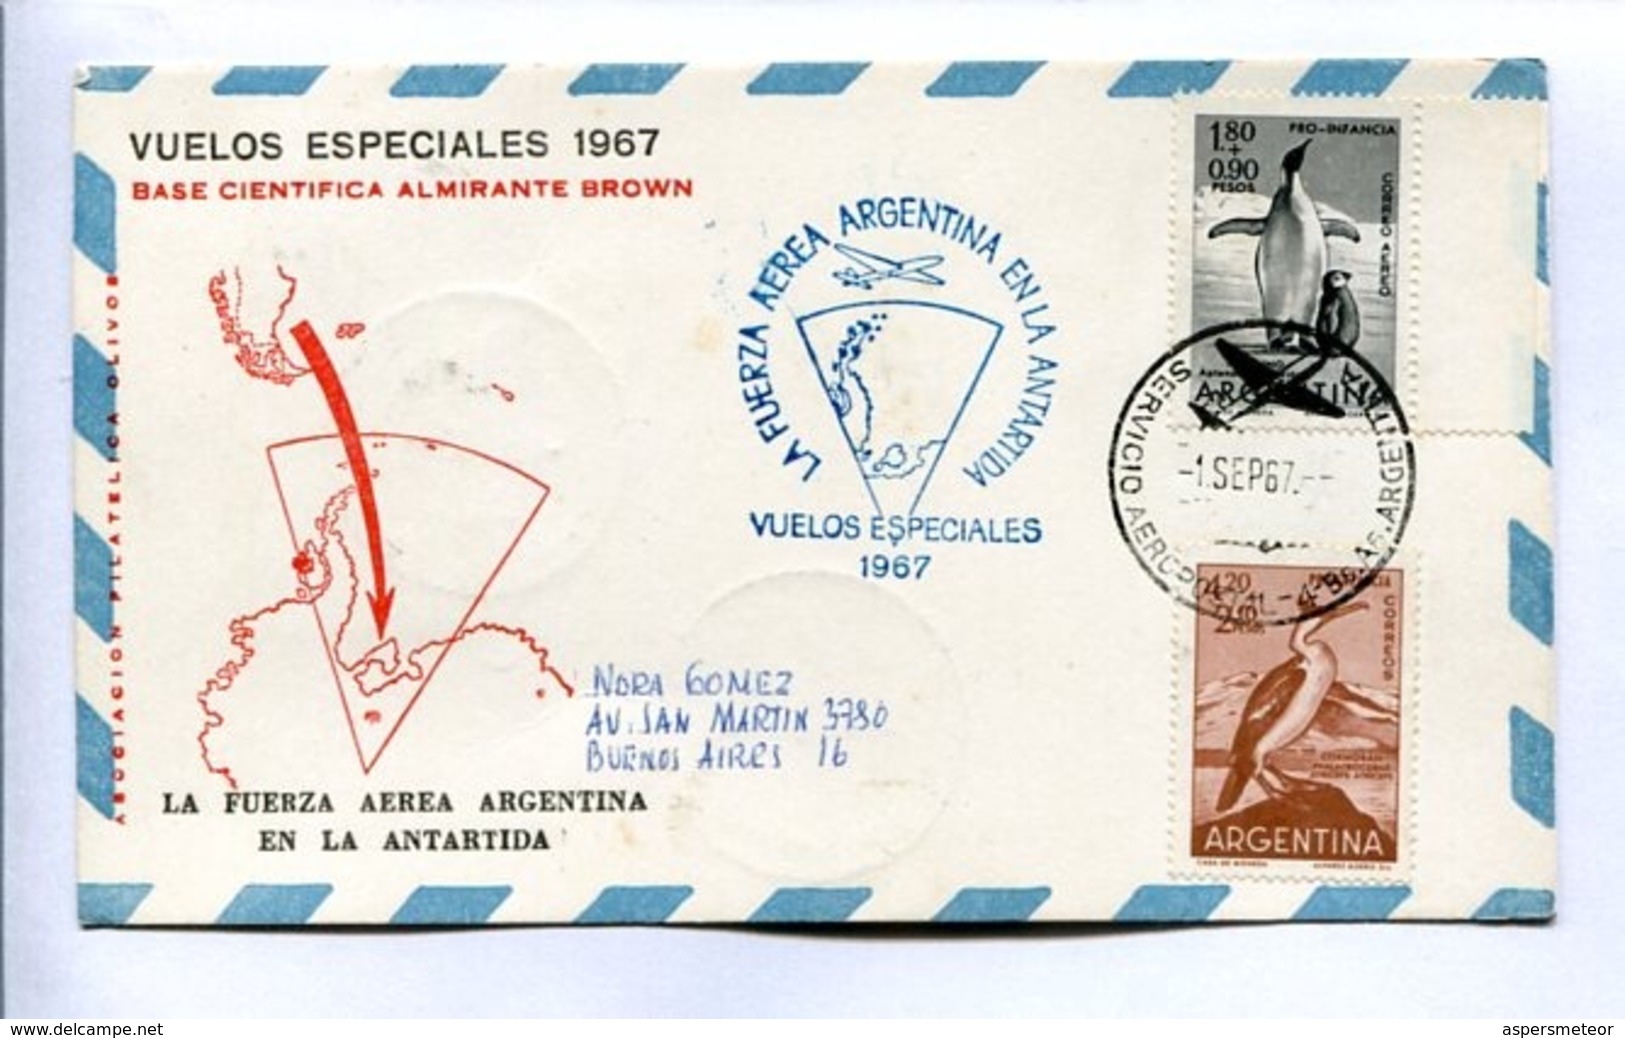 VUELOS ESPECIALES 1967 - BASE CIENTÍFICA ALMIRANTE BROWN. FUERZA AEREA ARGENTINA EN LA ANTÁRTIDA. CARTE PAR AVION -LILHU - Poolvluchten